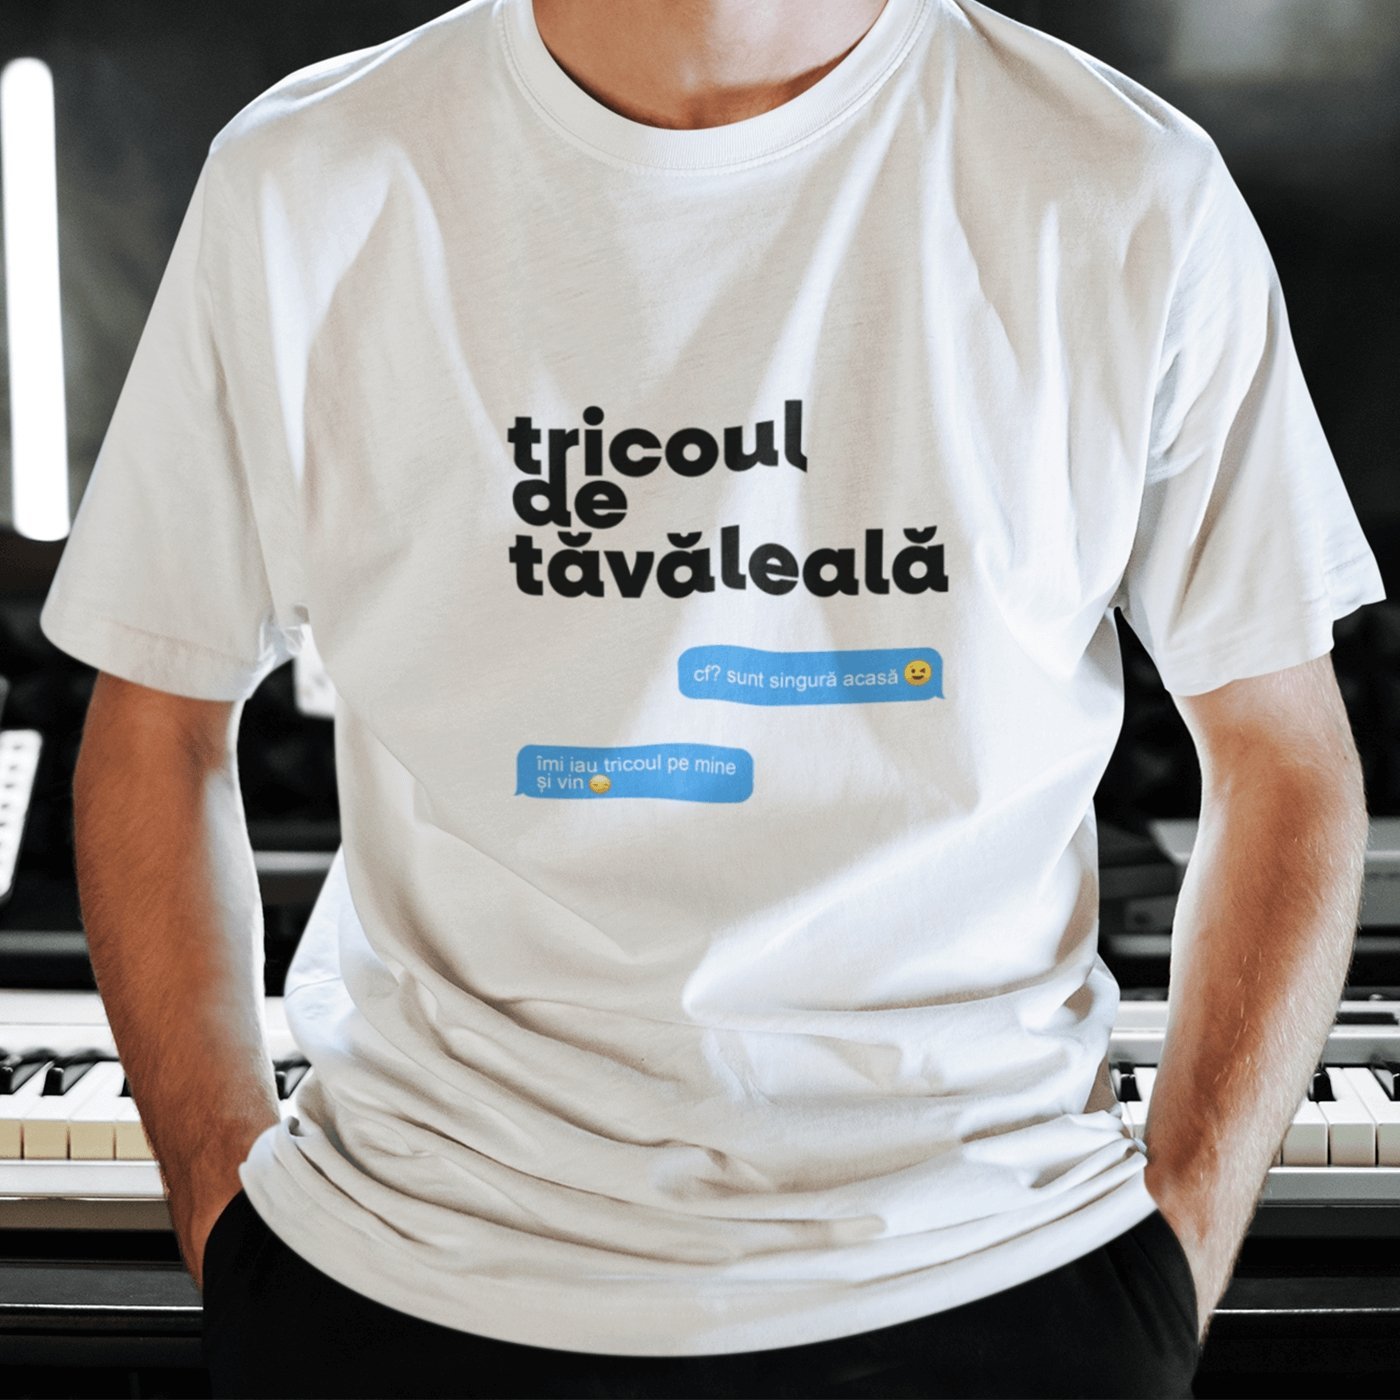 Tricou — Tricoul de tavaleala - Memorabil